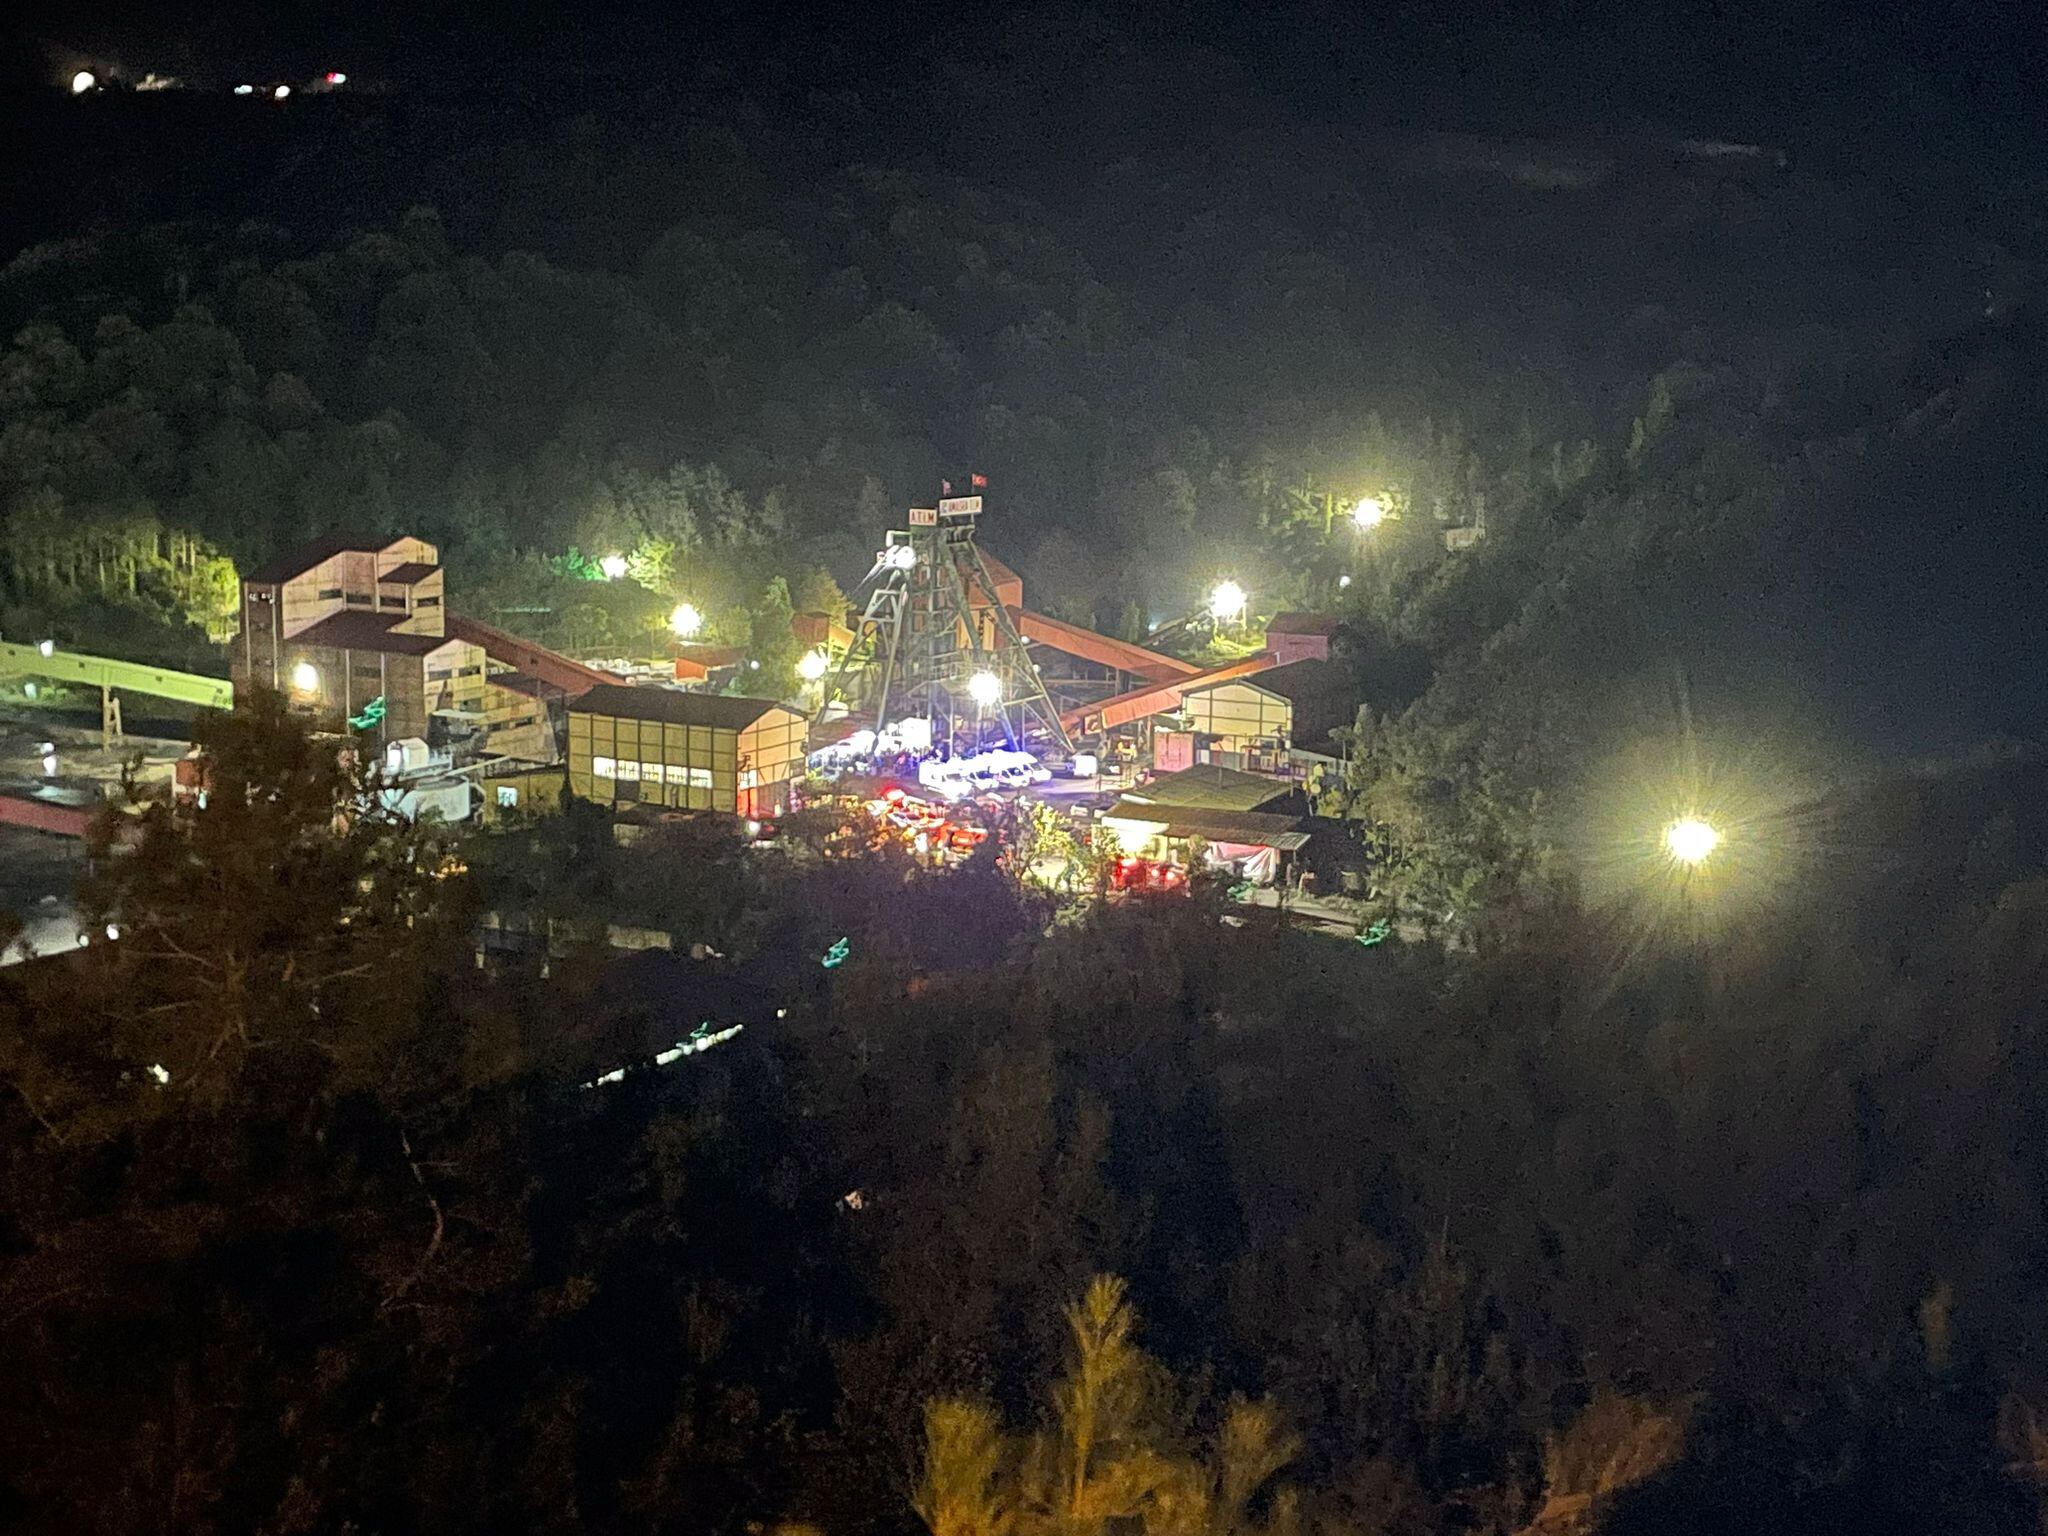 Ambulancias y bomberos llegan al lugar de la explosión tras una explosión ocurrida en una mina de carbón en Bartin, al norte de Turquía, el 14 de octubre de 2022. Según el gobernador de Bartin, 30 mineros quedan atrapados tras la explosión explosión de la mina.